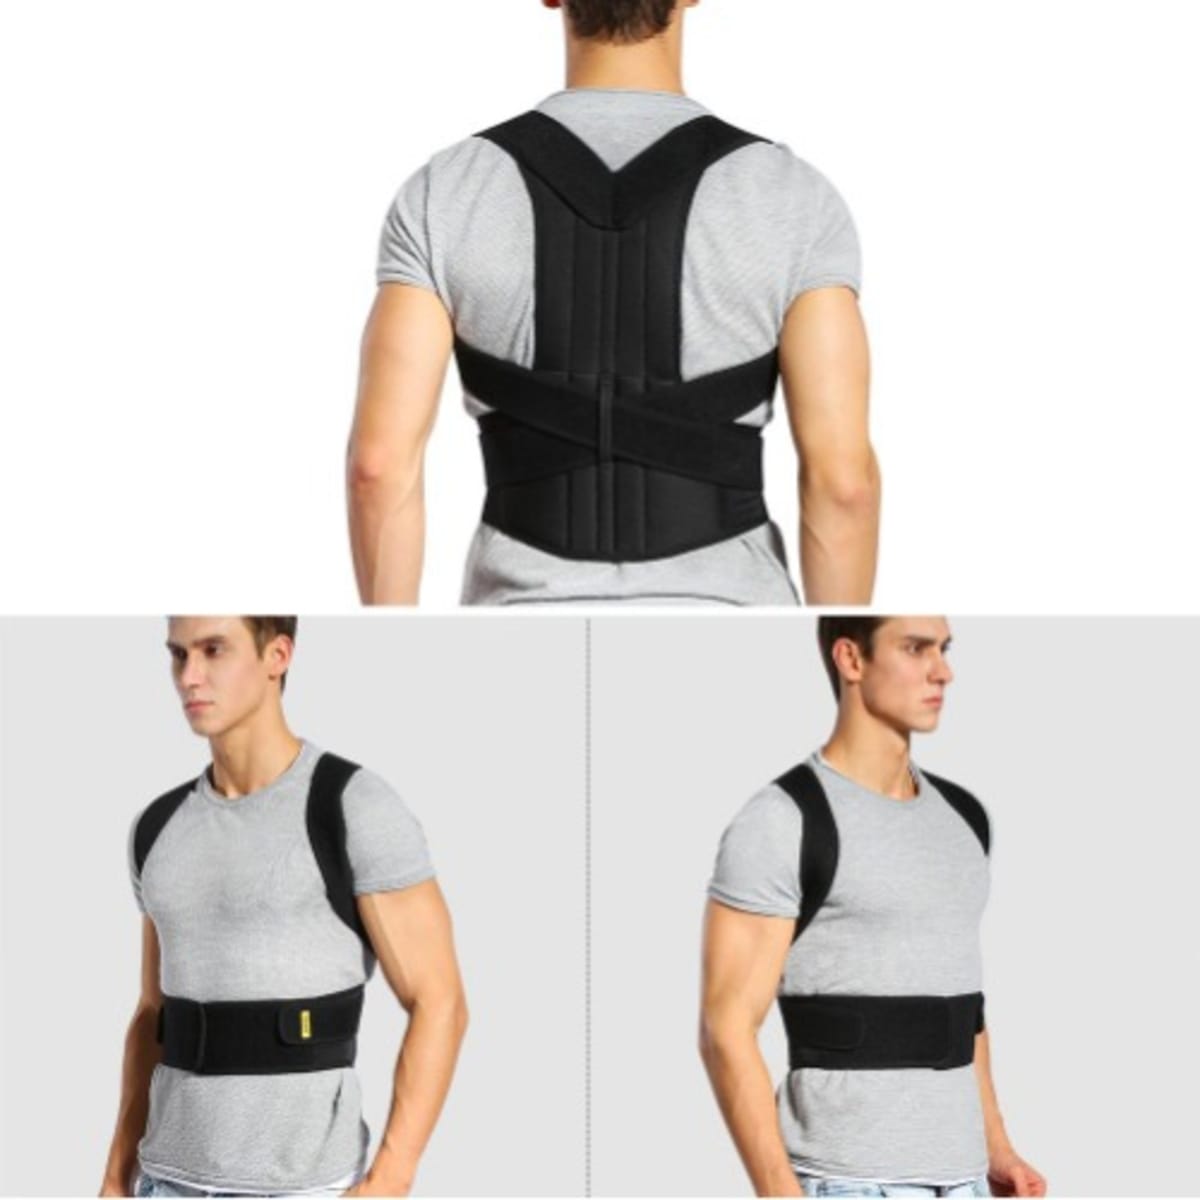 Buy Posture Corrector Belt for Back & Shoulder Support Online at